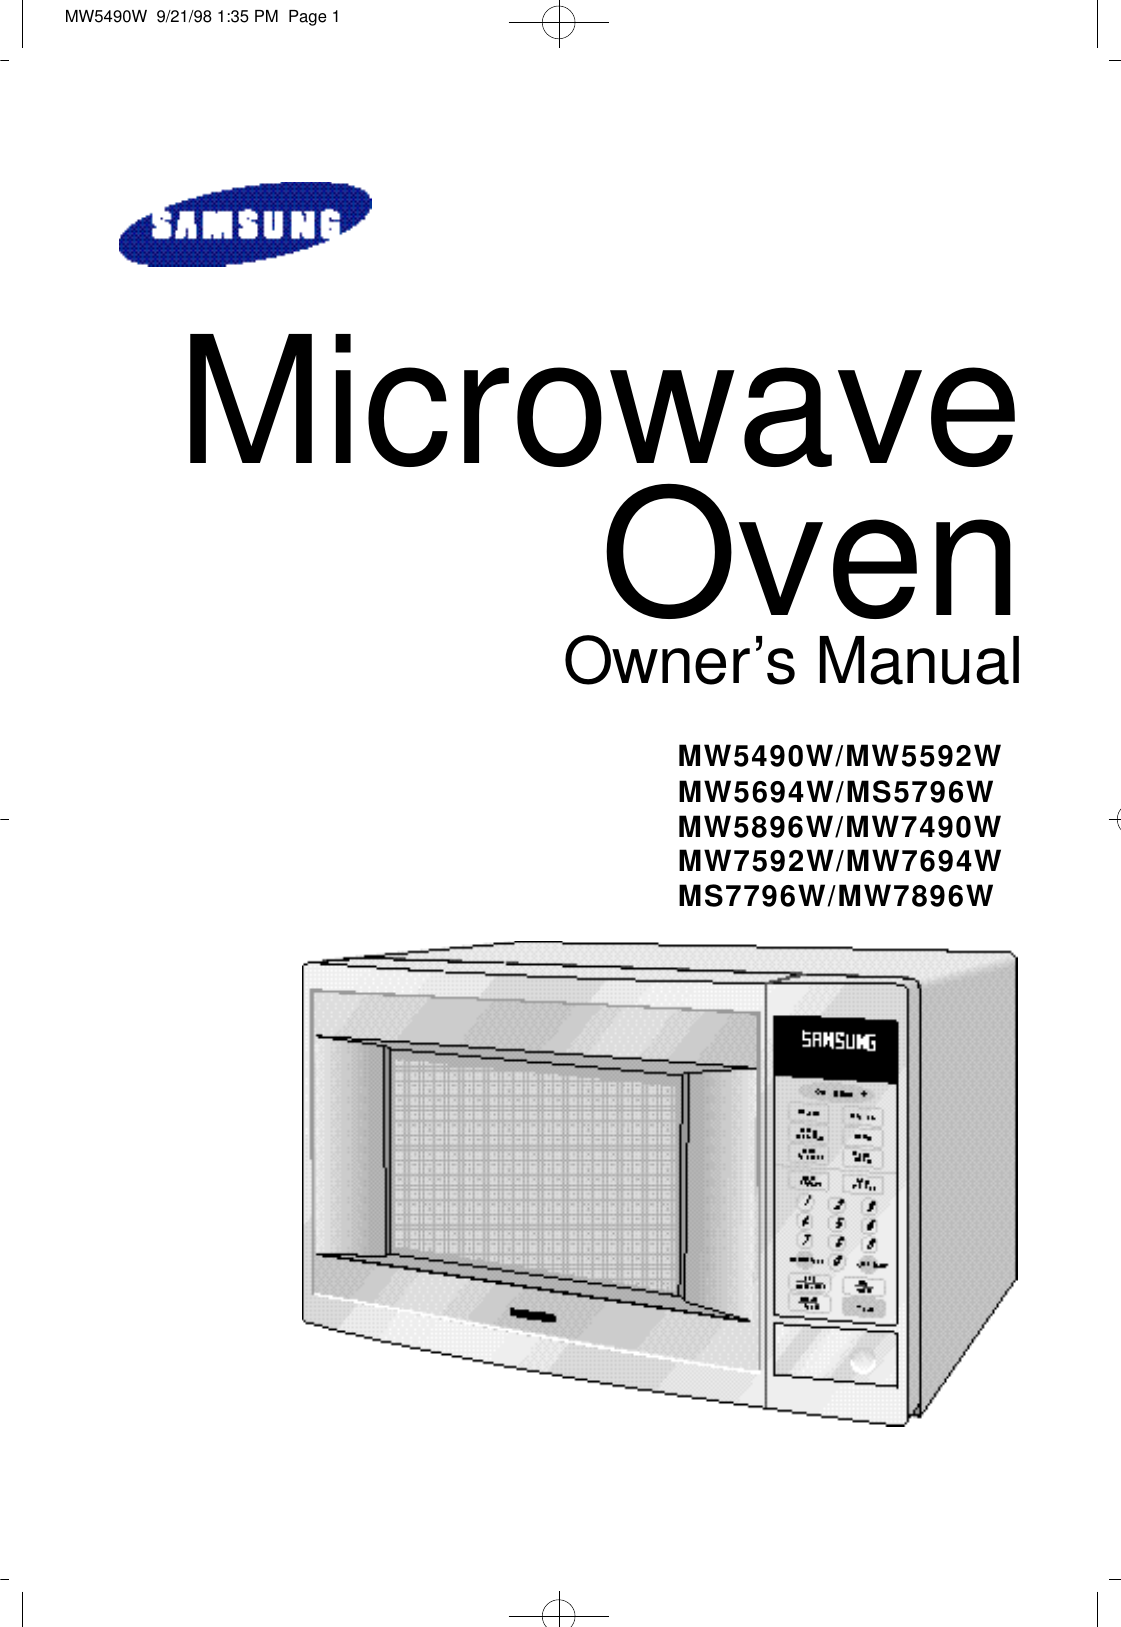 Microwave OvenO w n e r’s ManualM W 5 4 9 0 W / M W 5 5 9 2 WM W 5 6 9 4 W / M S 5 7 9 6 WM W 5 8 9 6 W / M W 7 4 9 0 WM W 7 5 9 2 W / M W 7 6 9 4 WM S 7 7 9 6 W / M W 7 8 9 6 WMW5490W  9/21/98 1:35 PM  Page 1